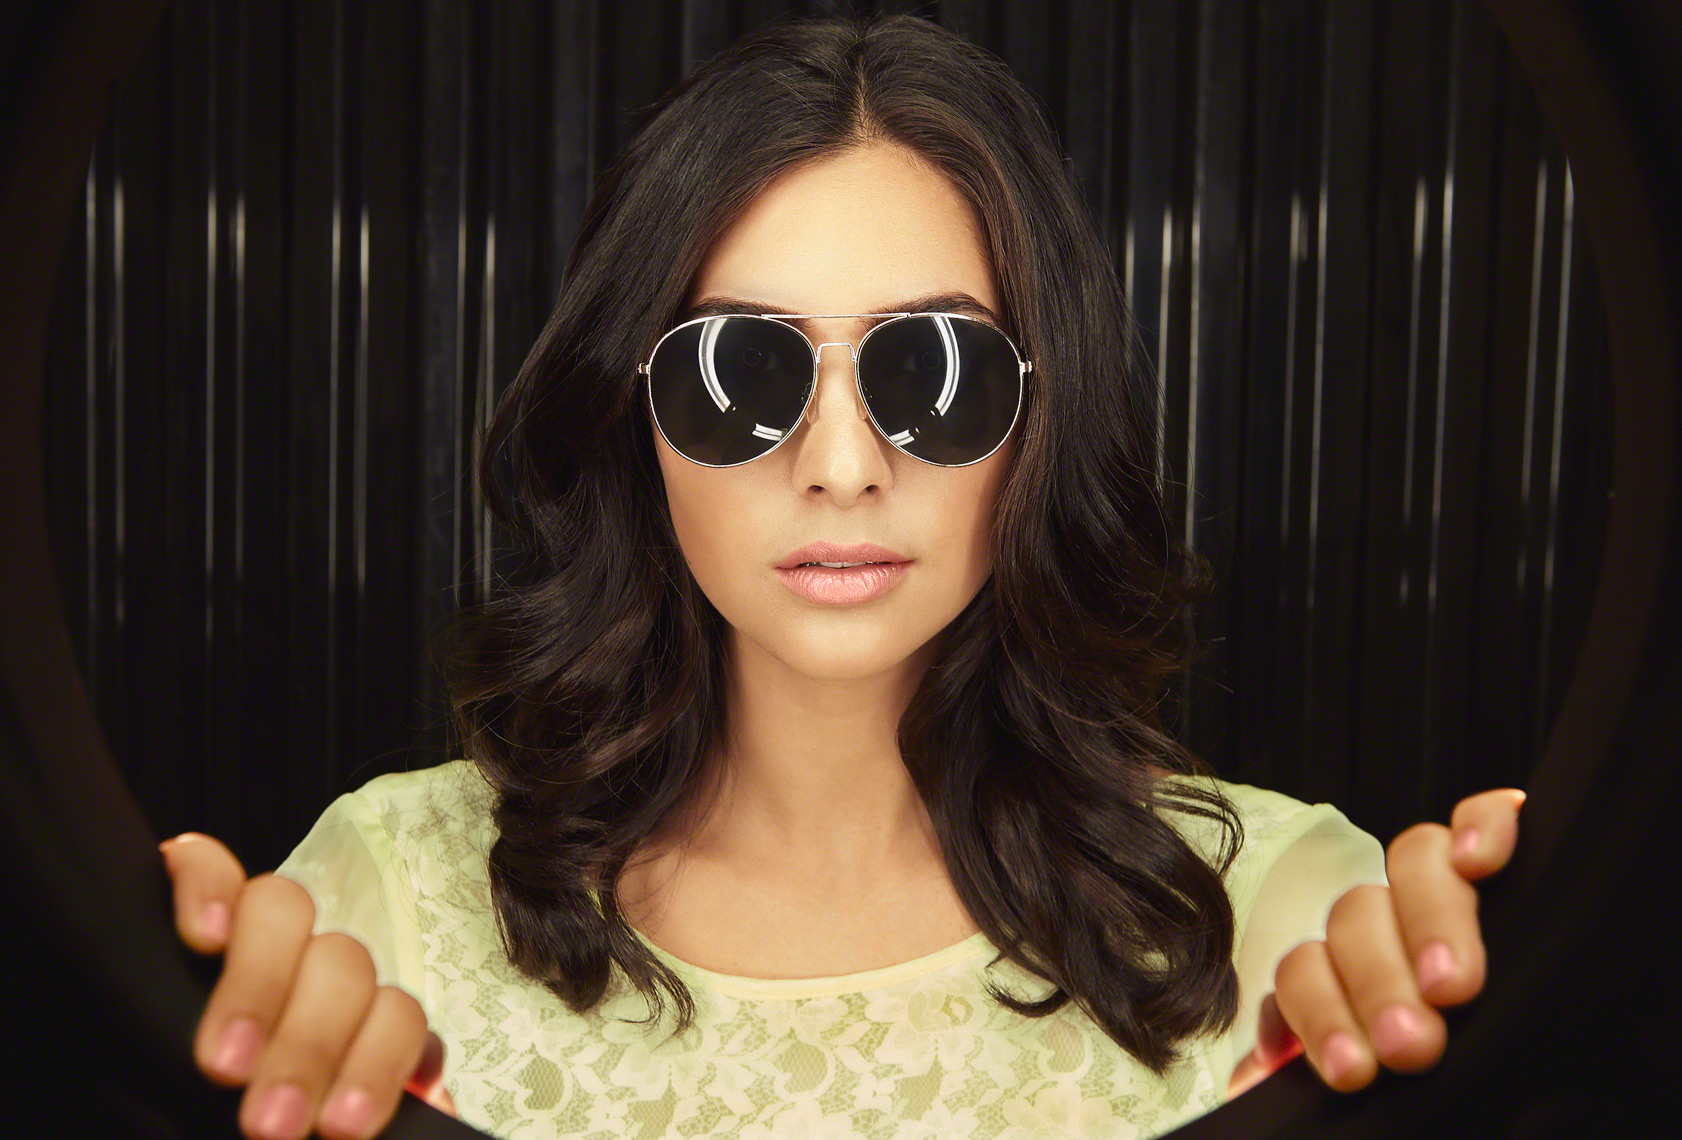 Camila Banus in Sunglasses